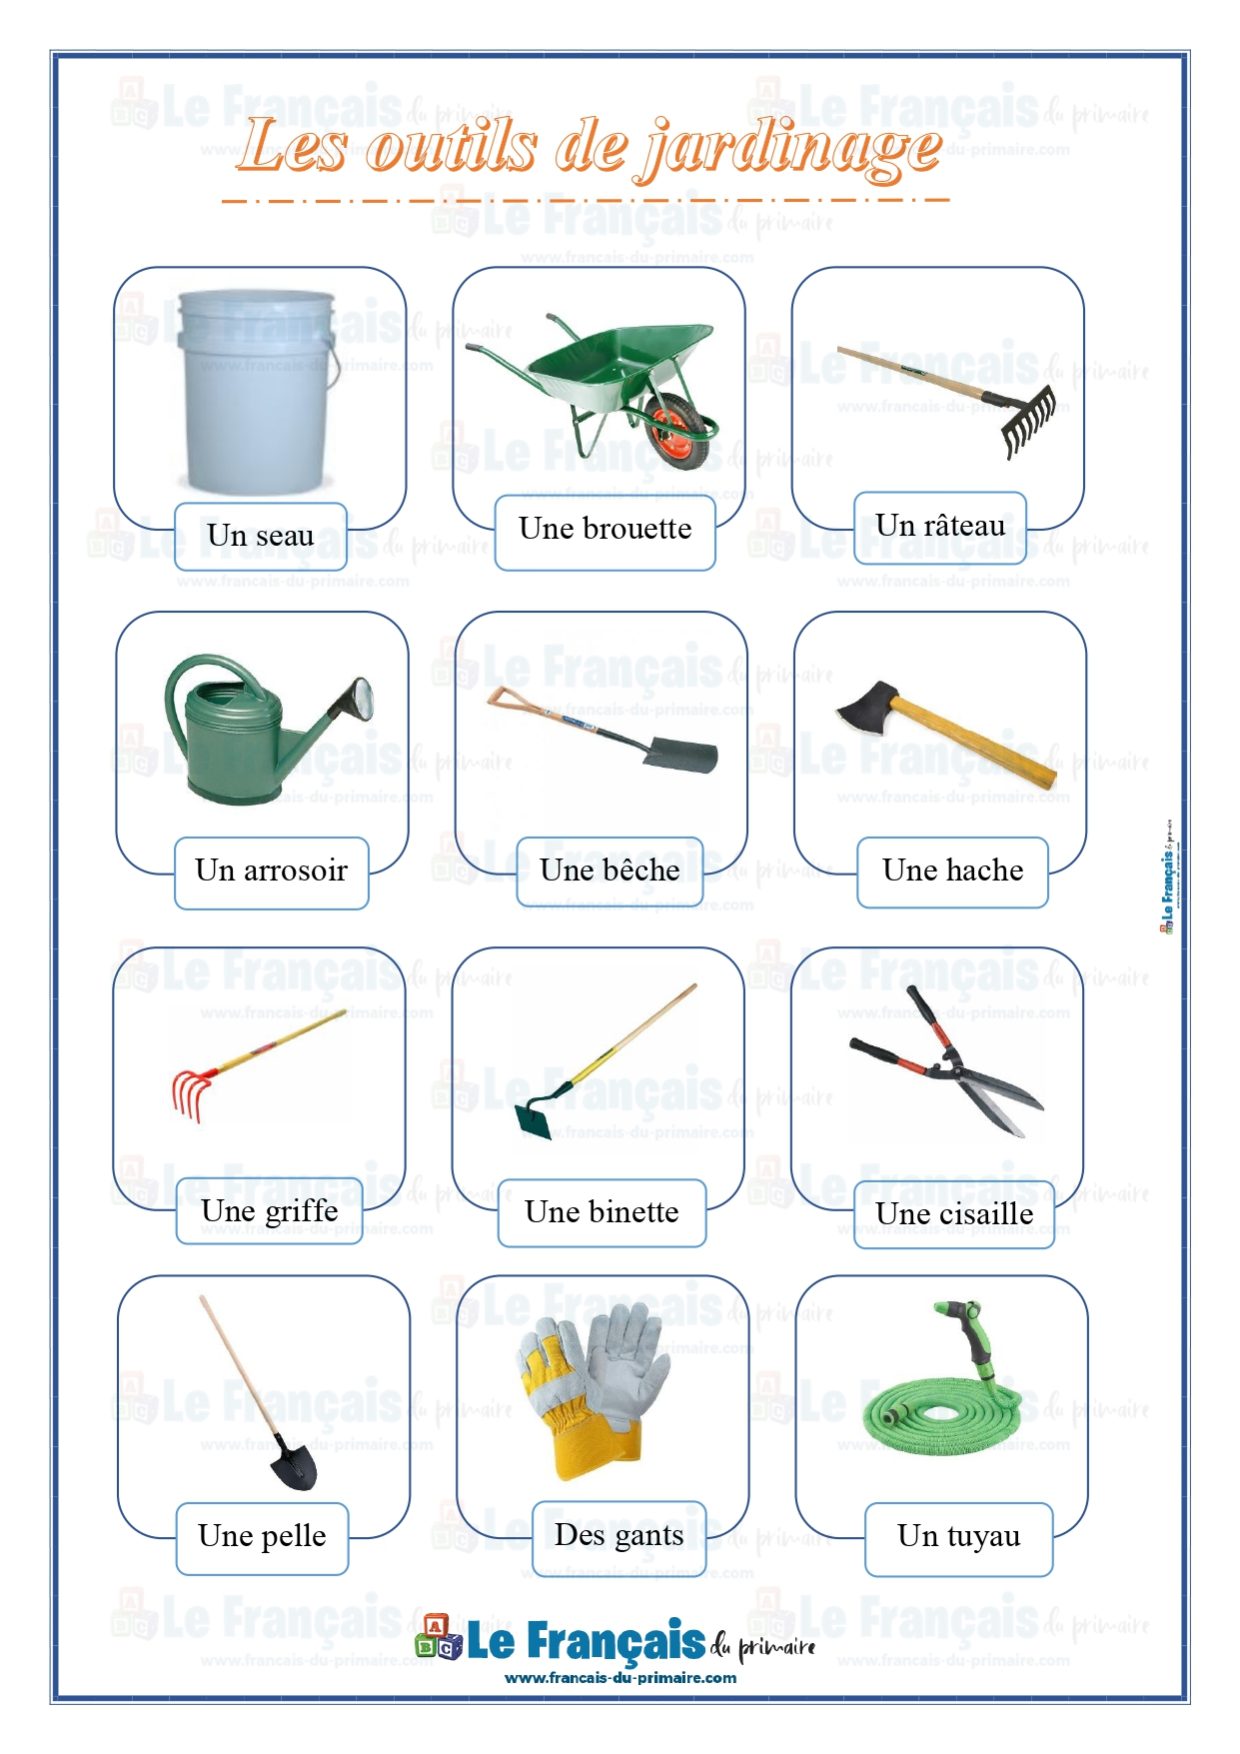 bricolage et jardinage > jardinage > jeu de petits outils image -  Dictionnaire Visuel